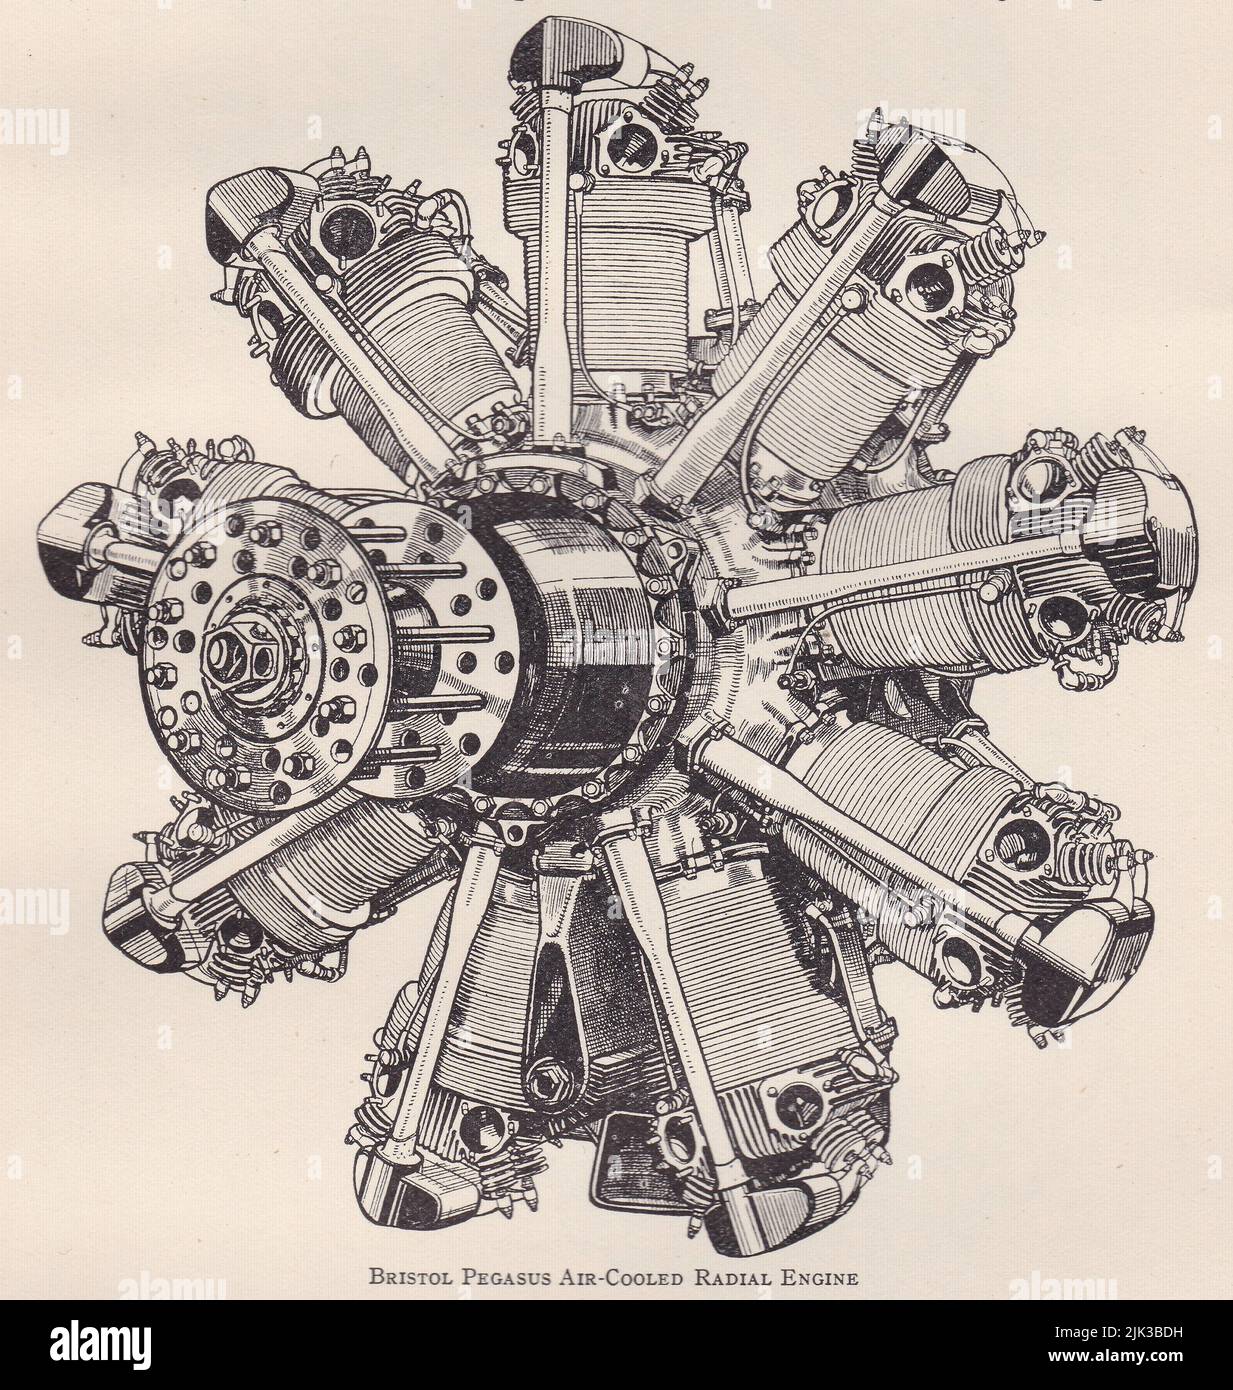 Diagrama vintage de un motor radial refrigerado por aire Bristol Pegasus. Foto de stock